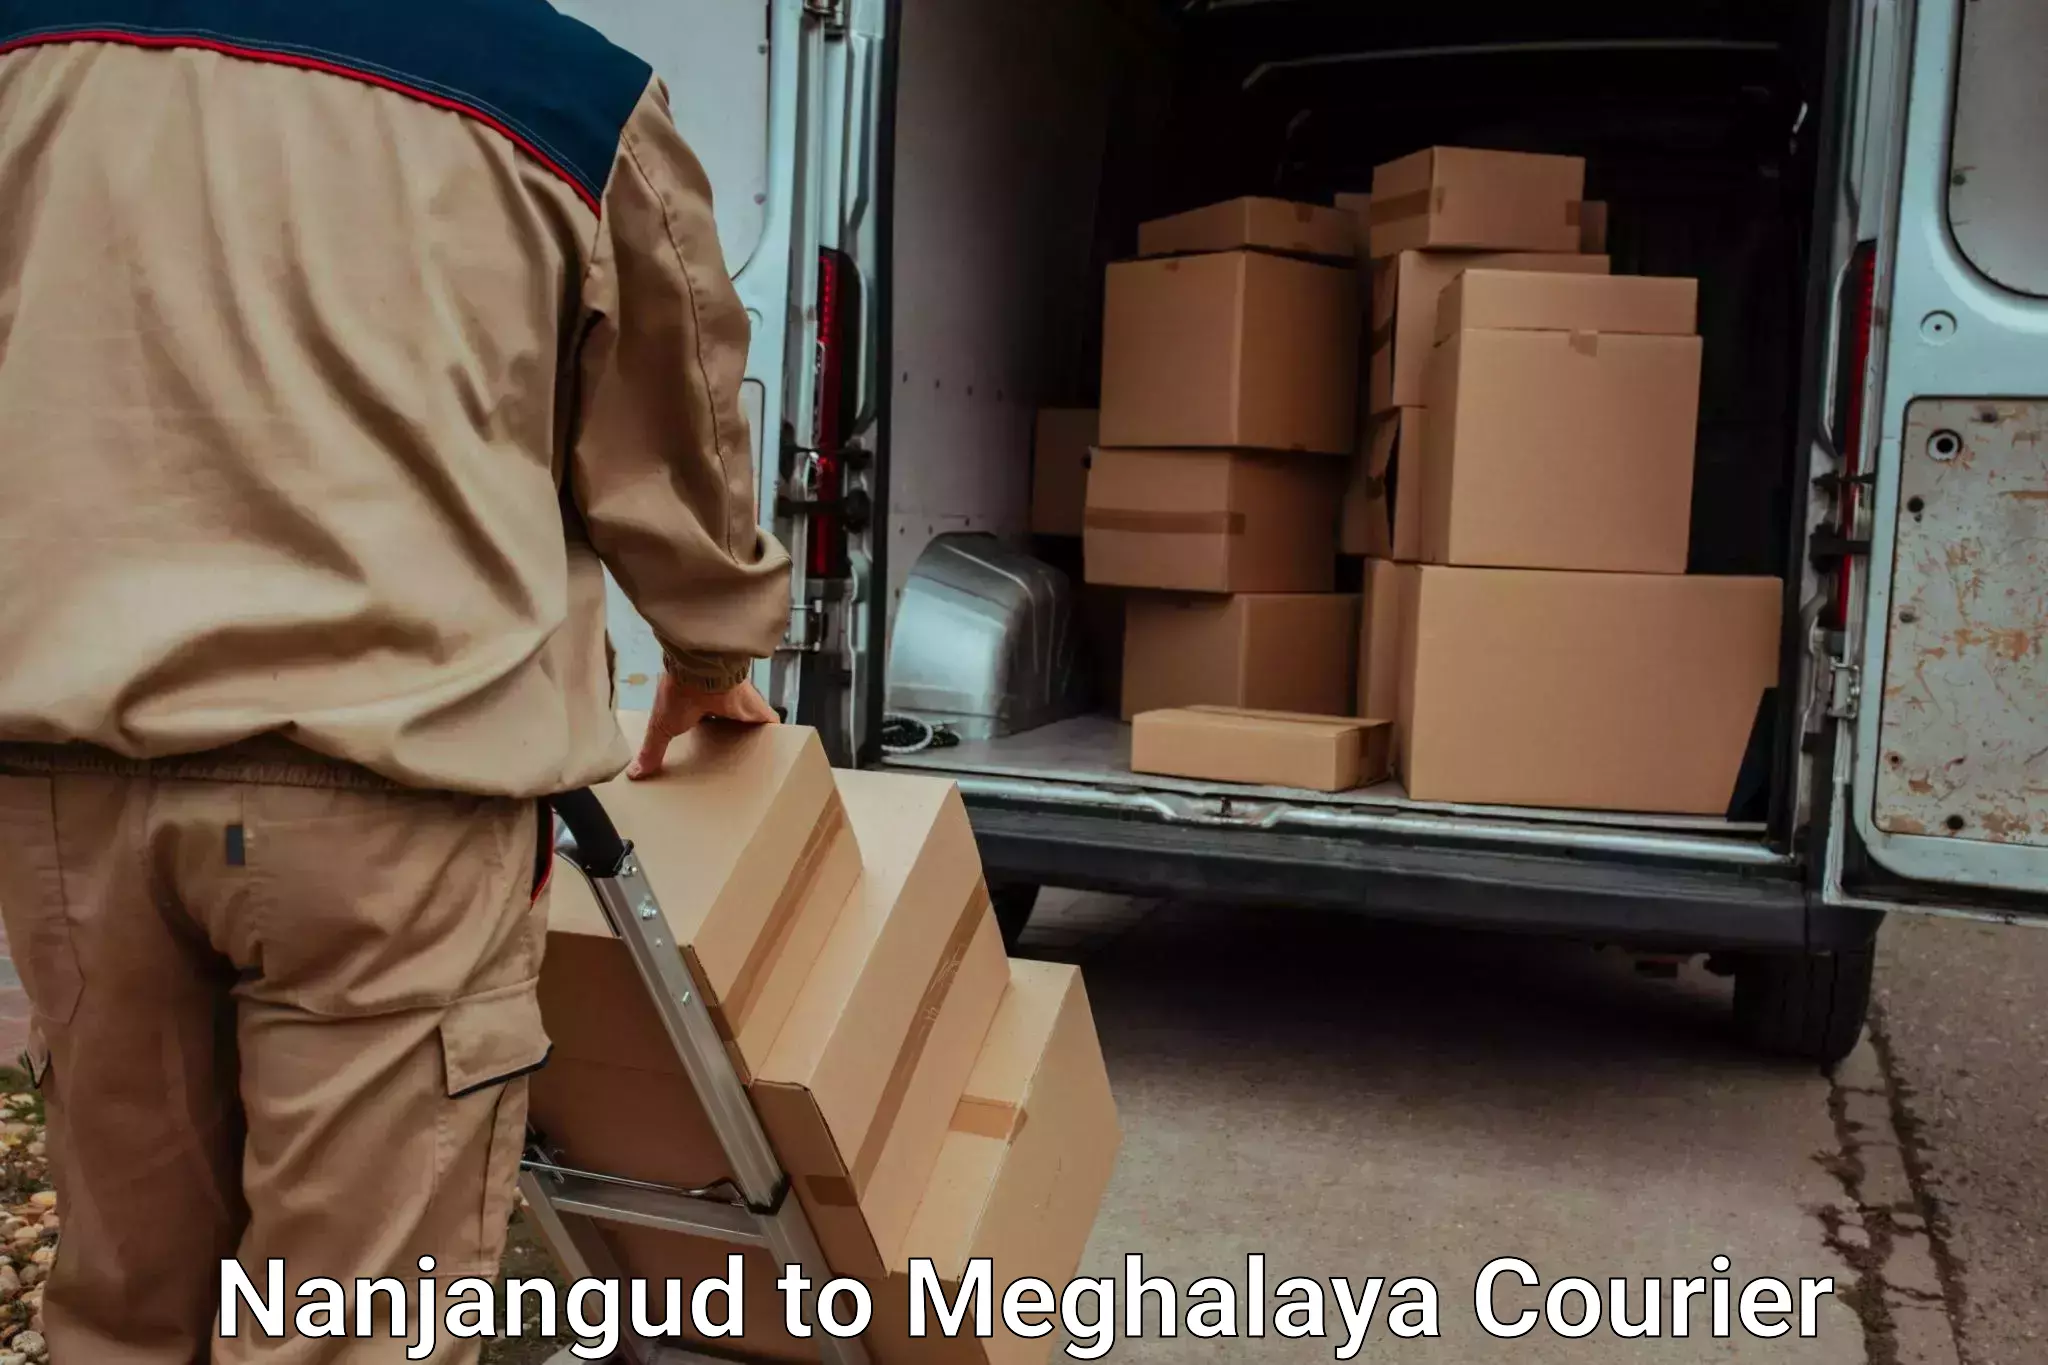 Efficient moving company Nanjangud to Shillong